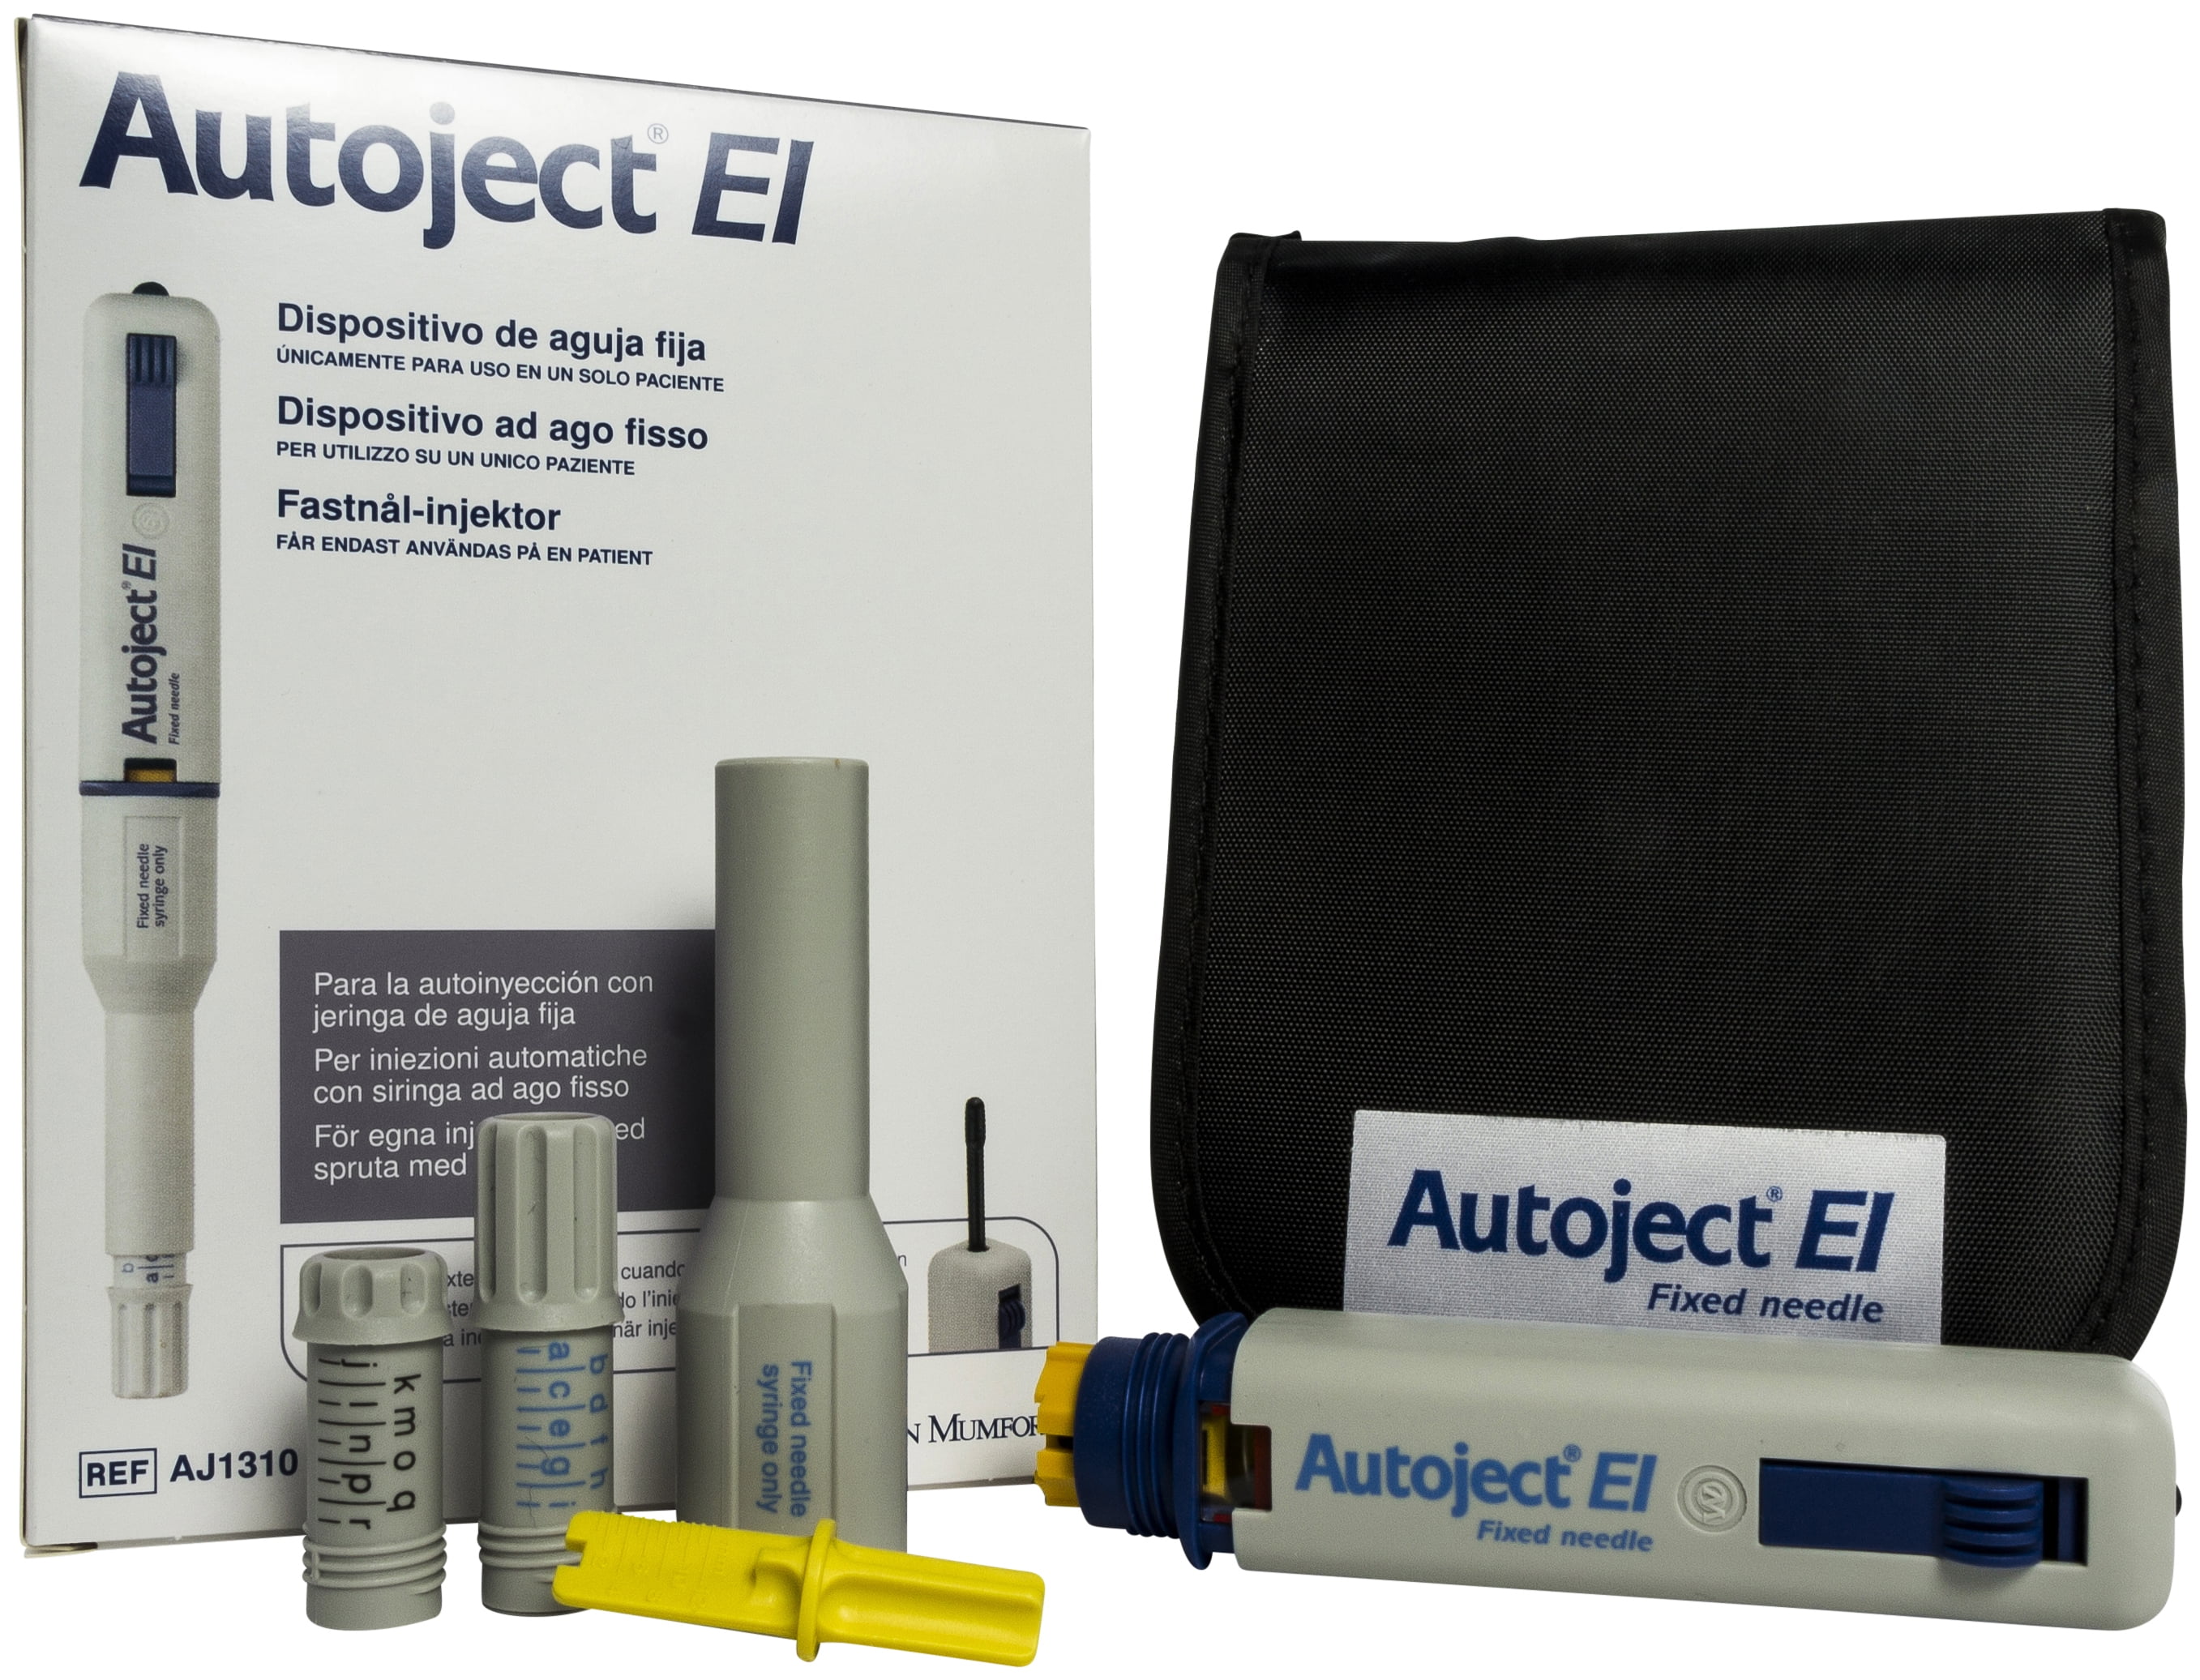 Owen Mumford AJ1310 Autoject EI Injection Aid Device 